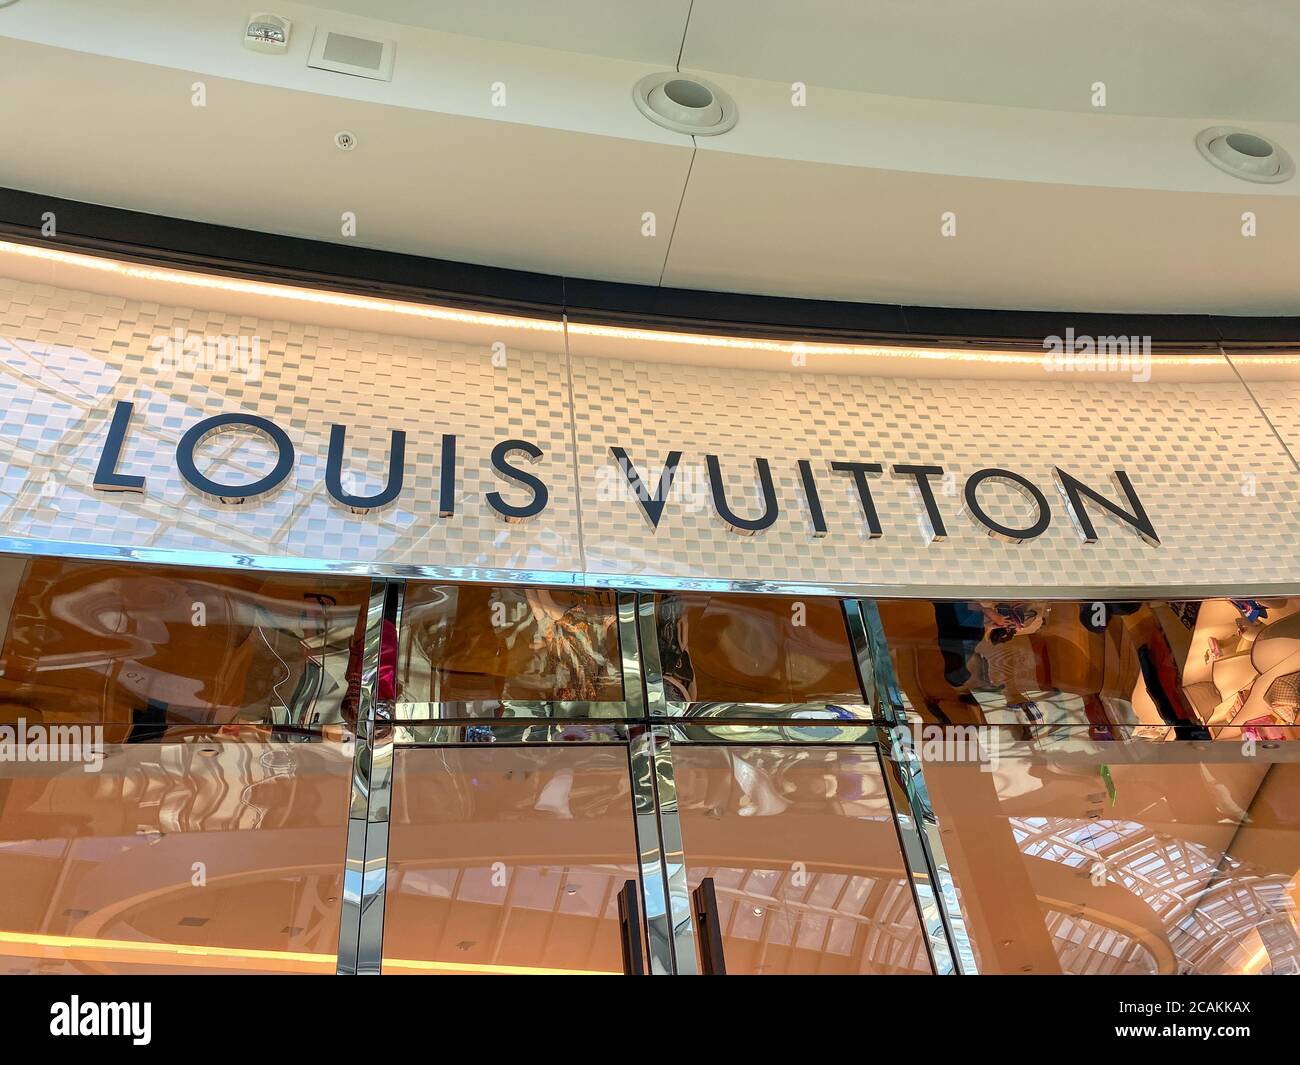 Milan Guest Wearing Louis Vuitton Monogram Editorial Stock Photo